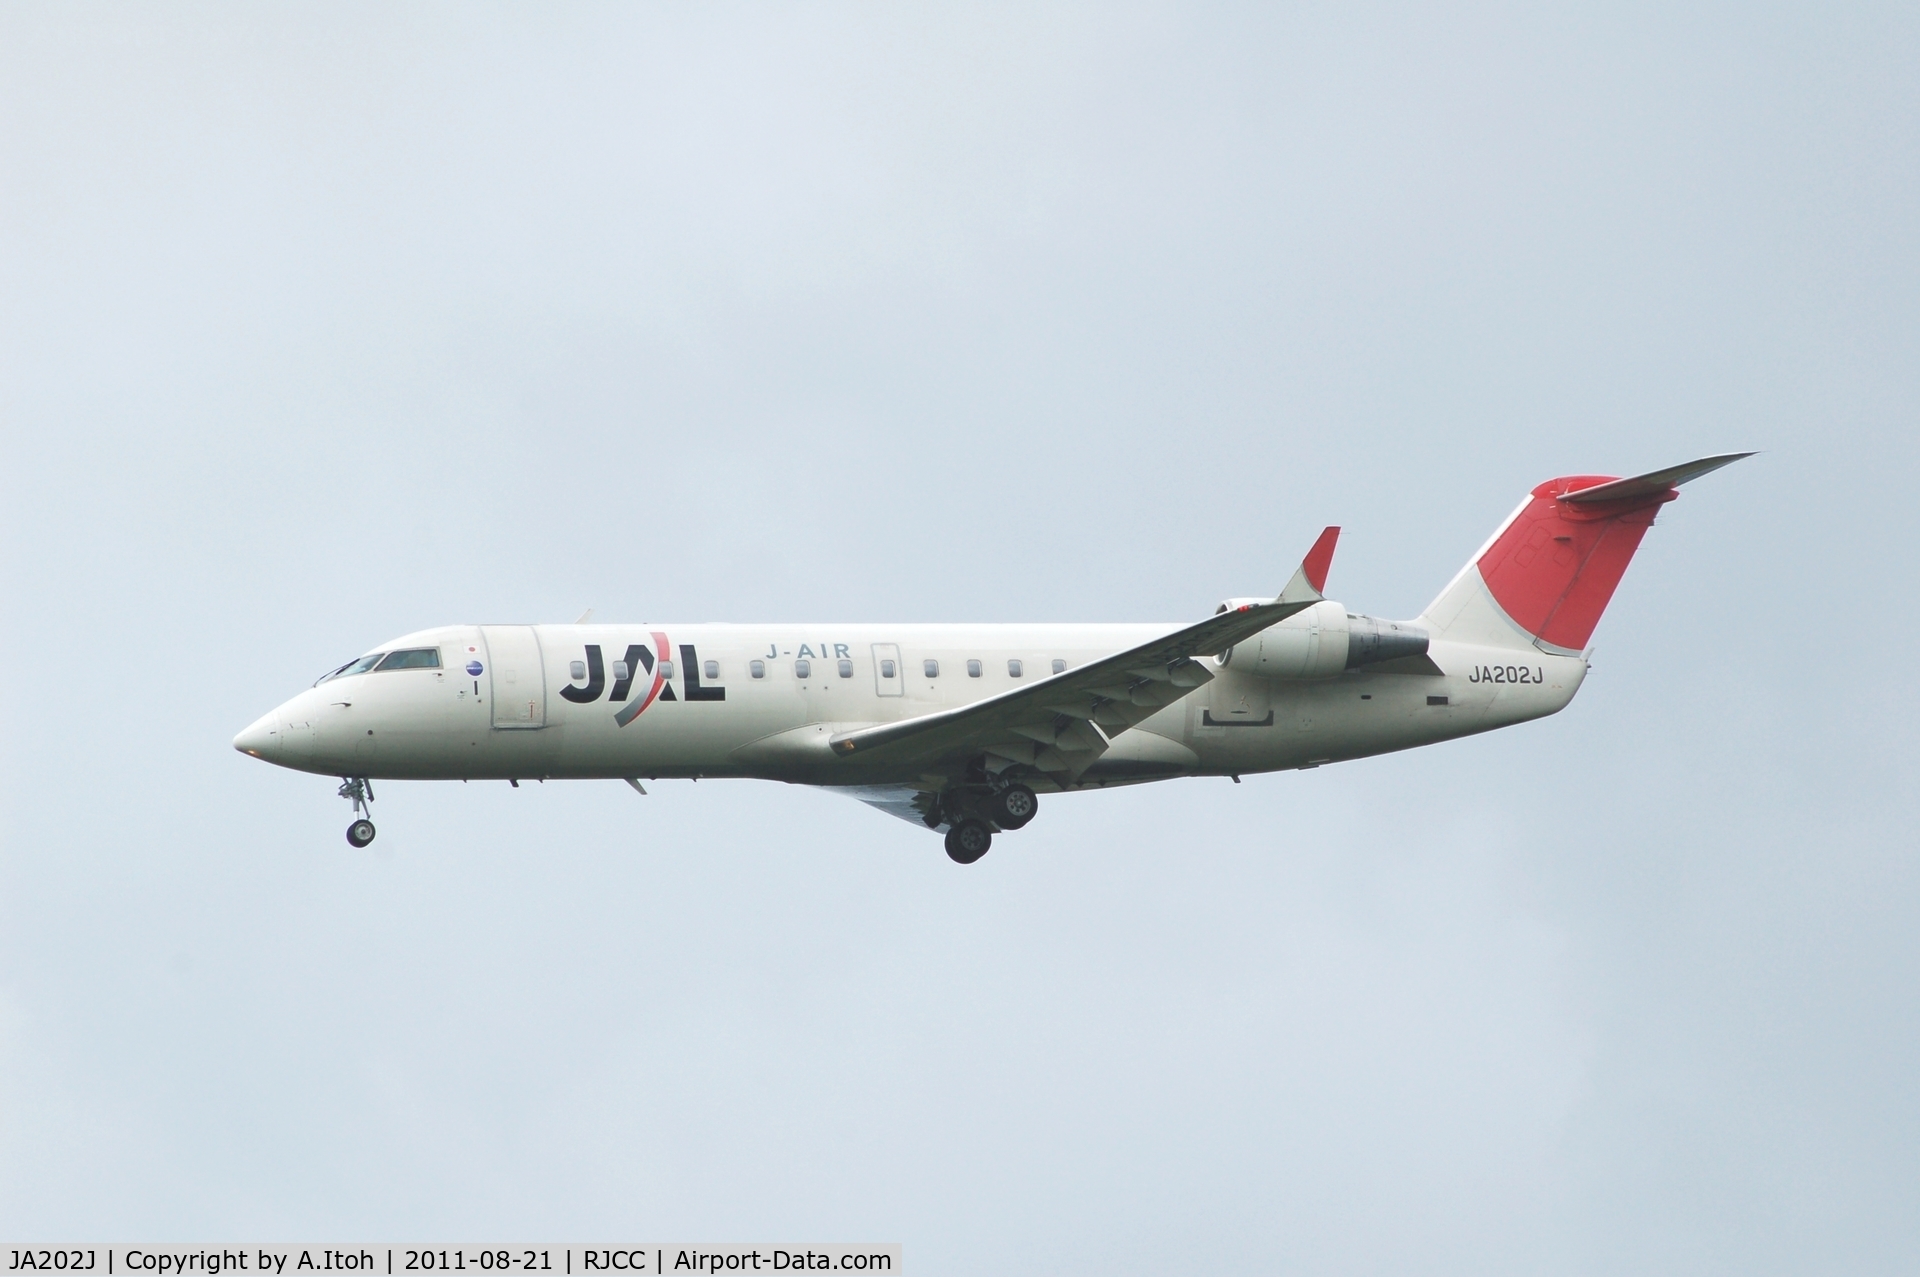 JA202J, 2001 Canadair CRJ-200ER (CL-600-2B19) C/N 7484, J-Air Rwy19L App